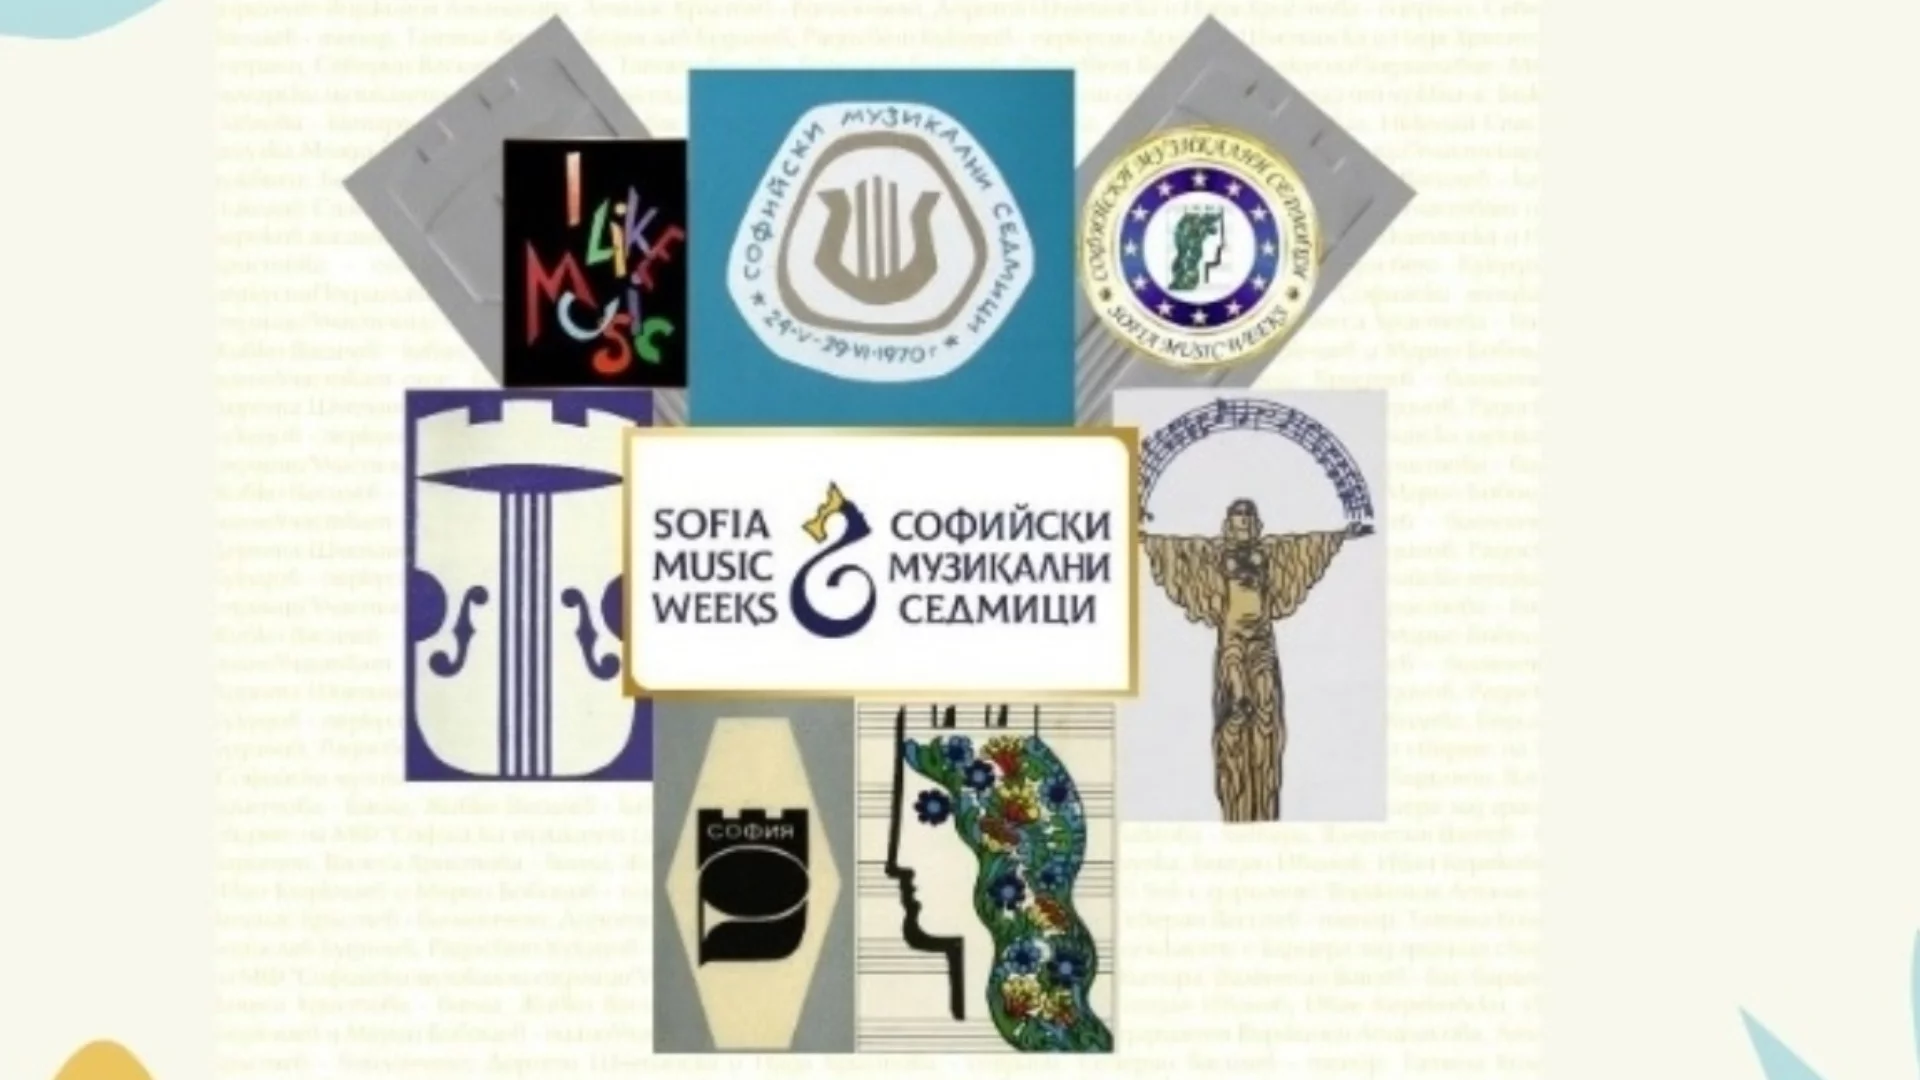 "Софийски музикални седмици" представя книга за историята на фестивала (СНИМКА)